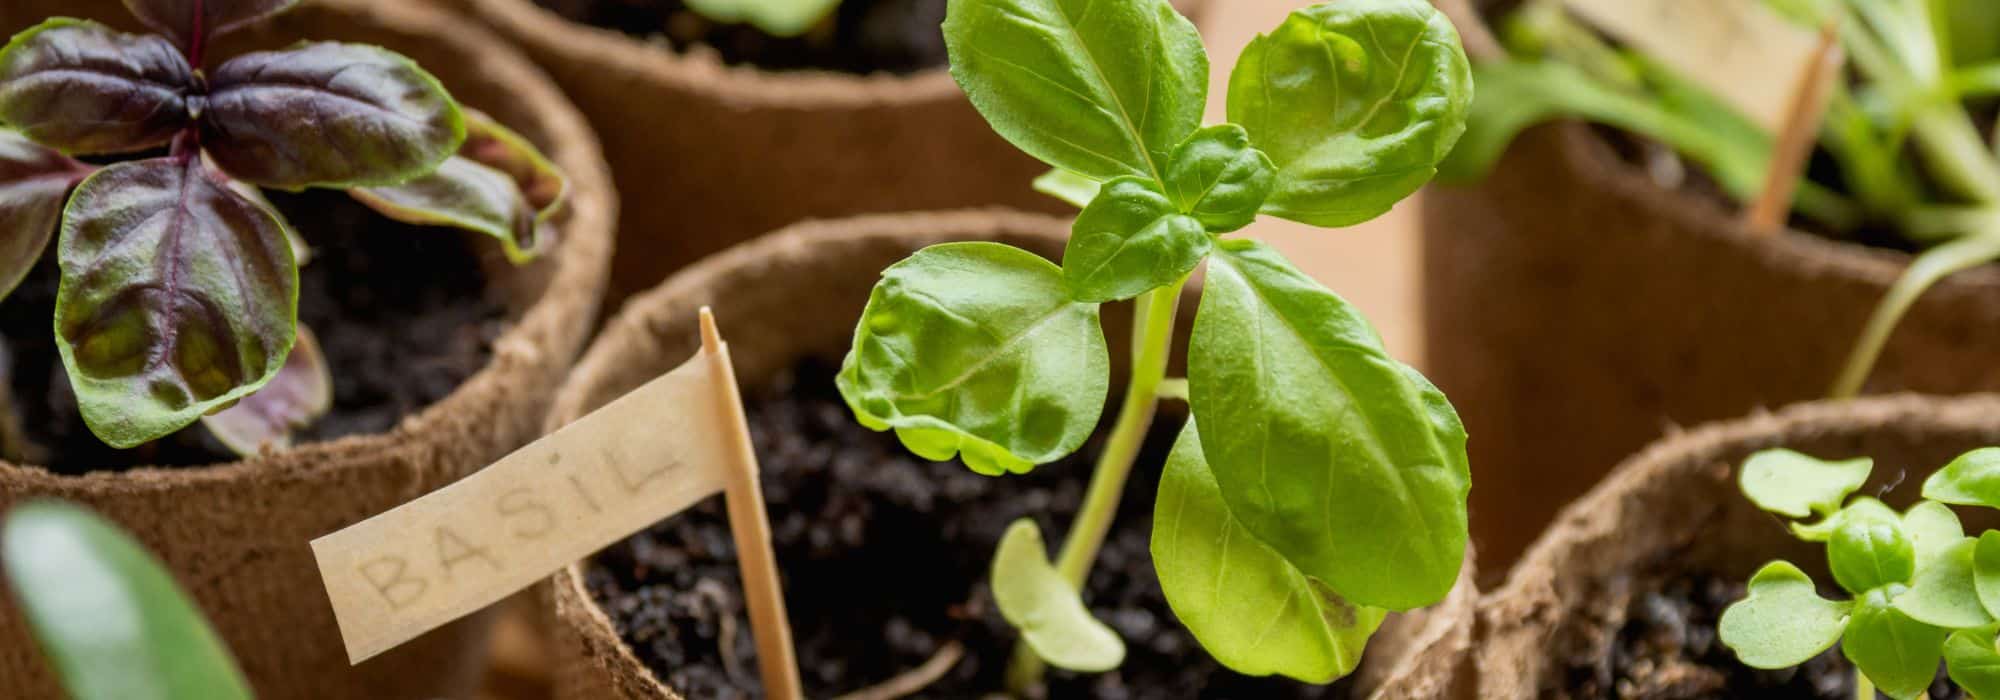 Comment obtenir ou multiplier des plantes aromatiques gratuitement ?